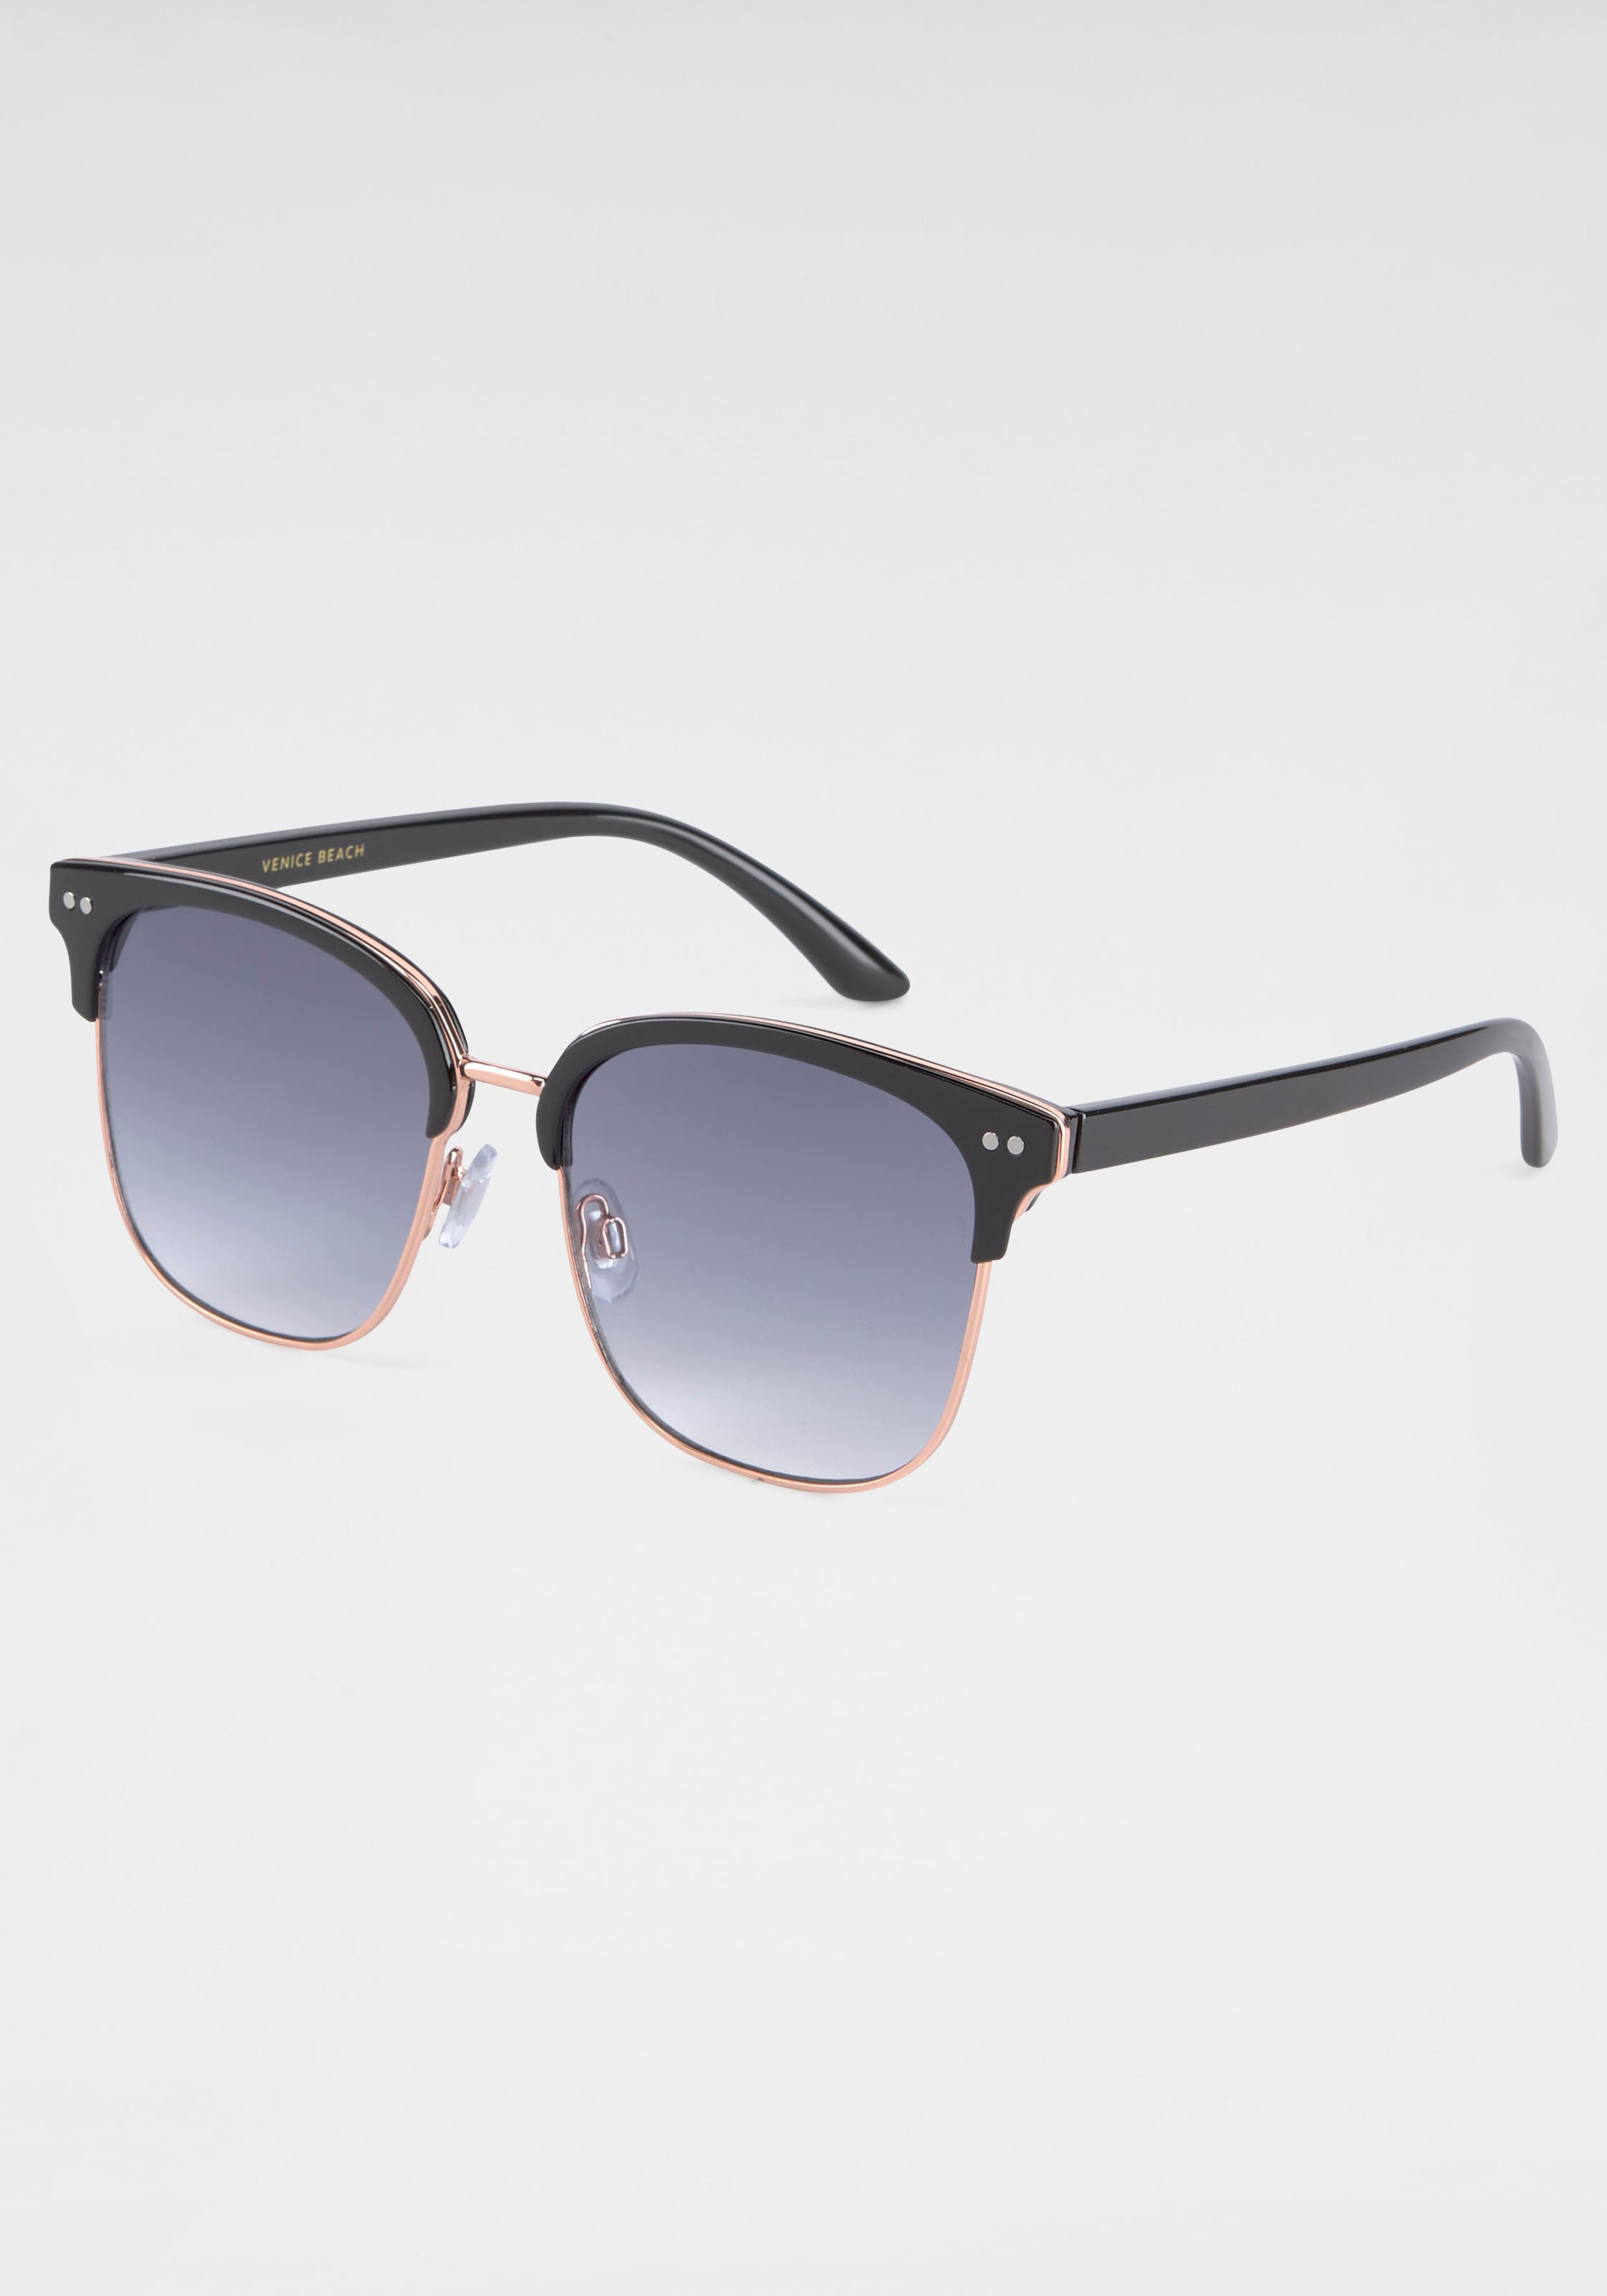 ♕ BACK IN BLACK Gläsern bestellen Sonnenbrille, gebogenen mit versandkostenfrei Eyewear